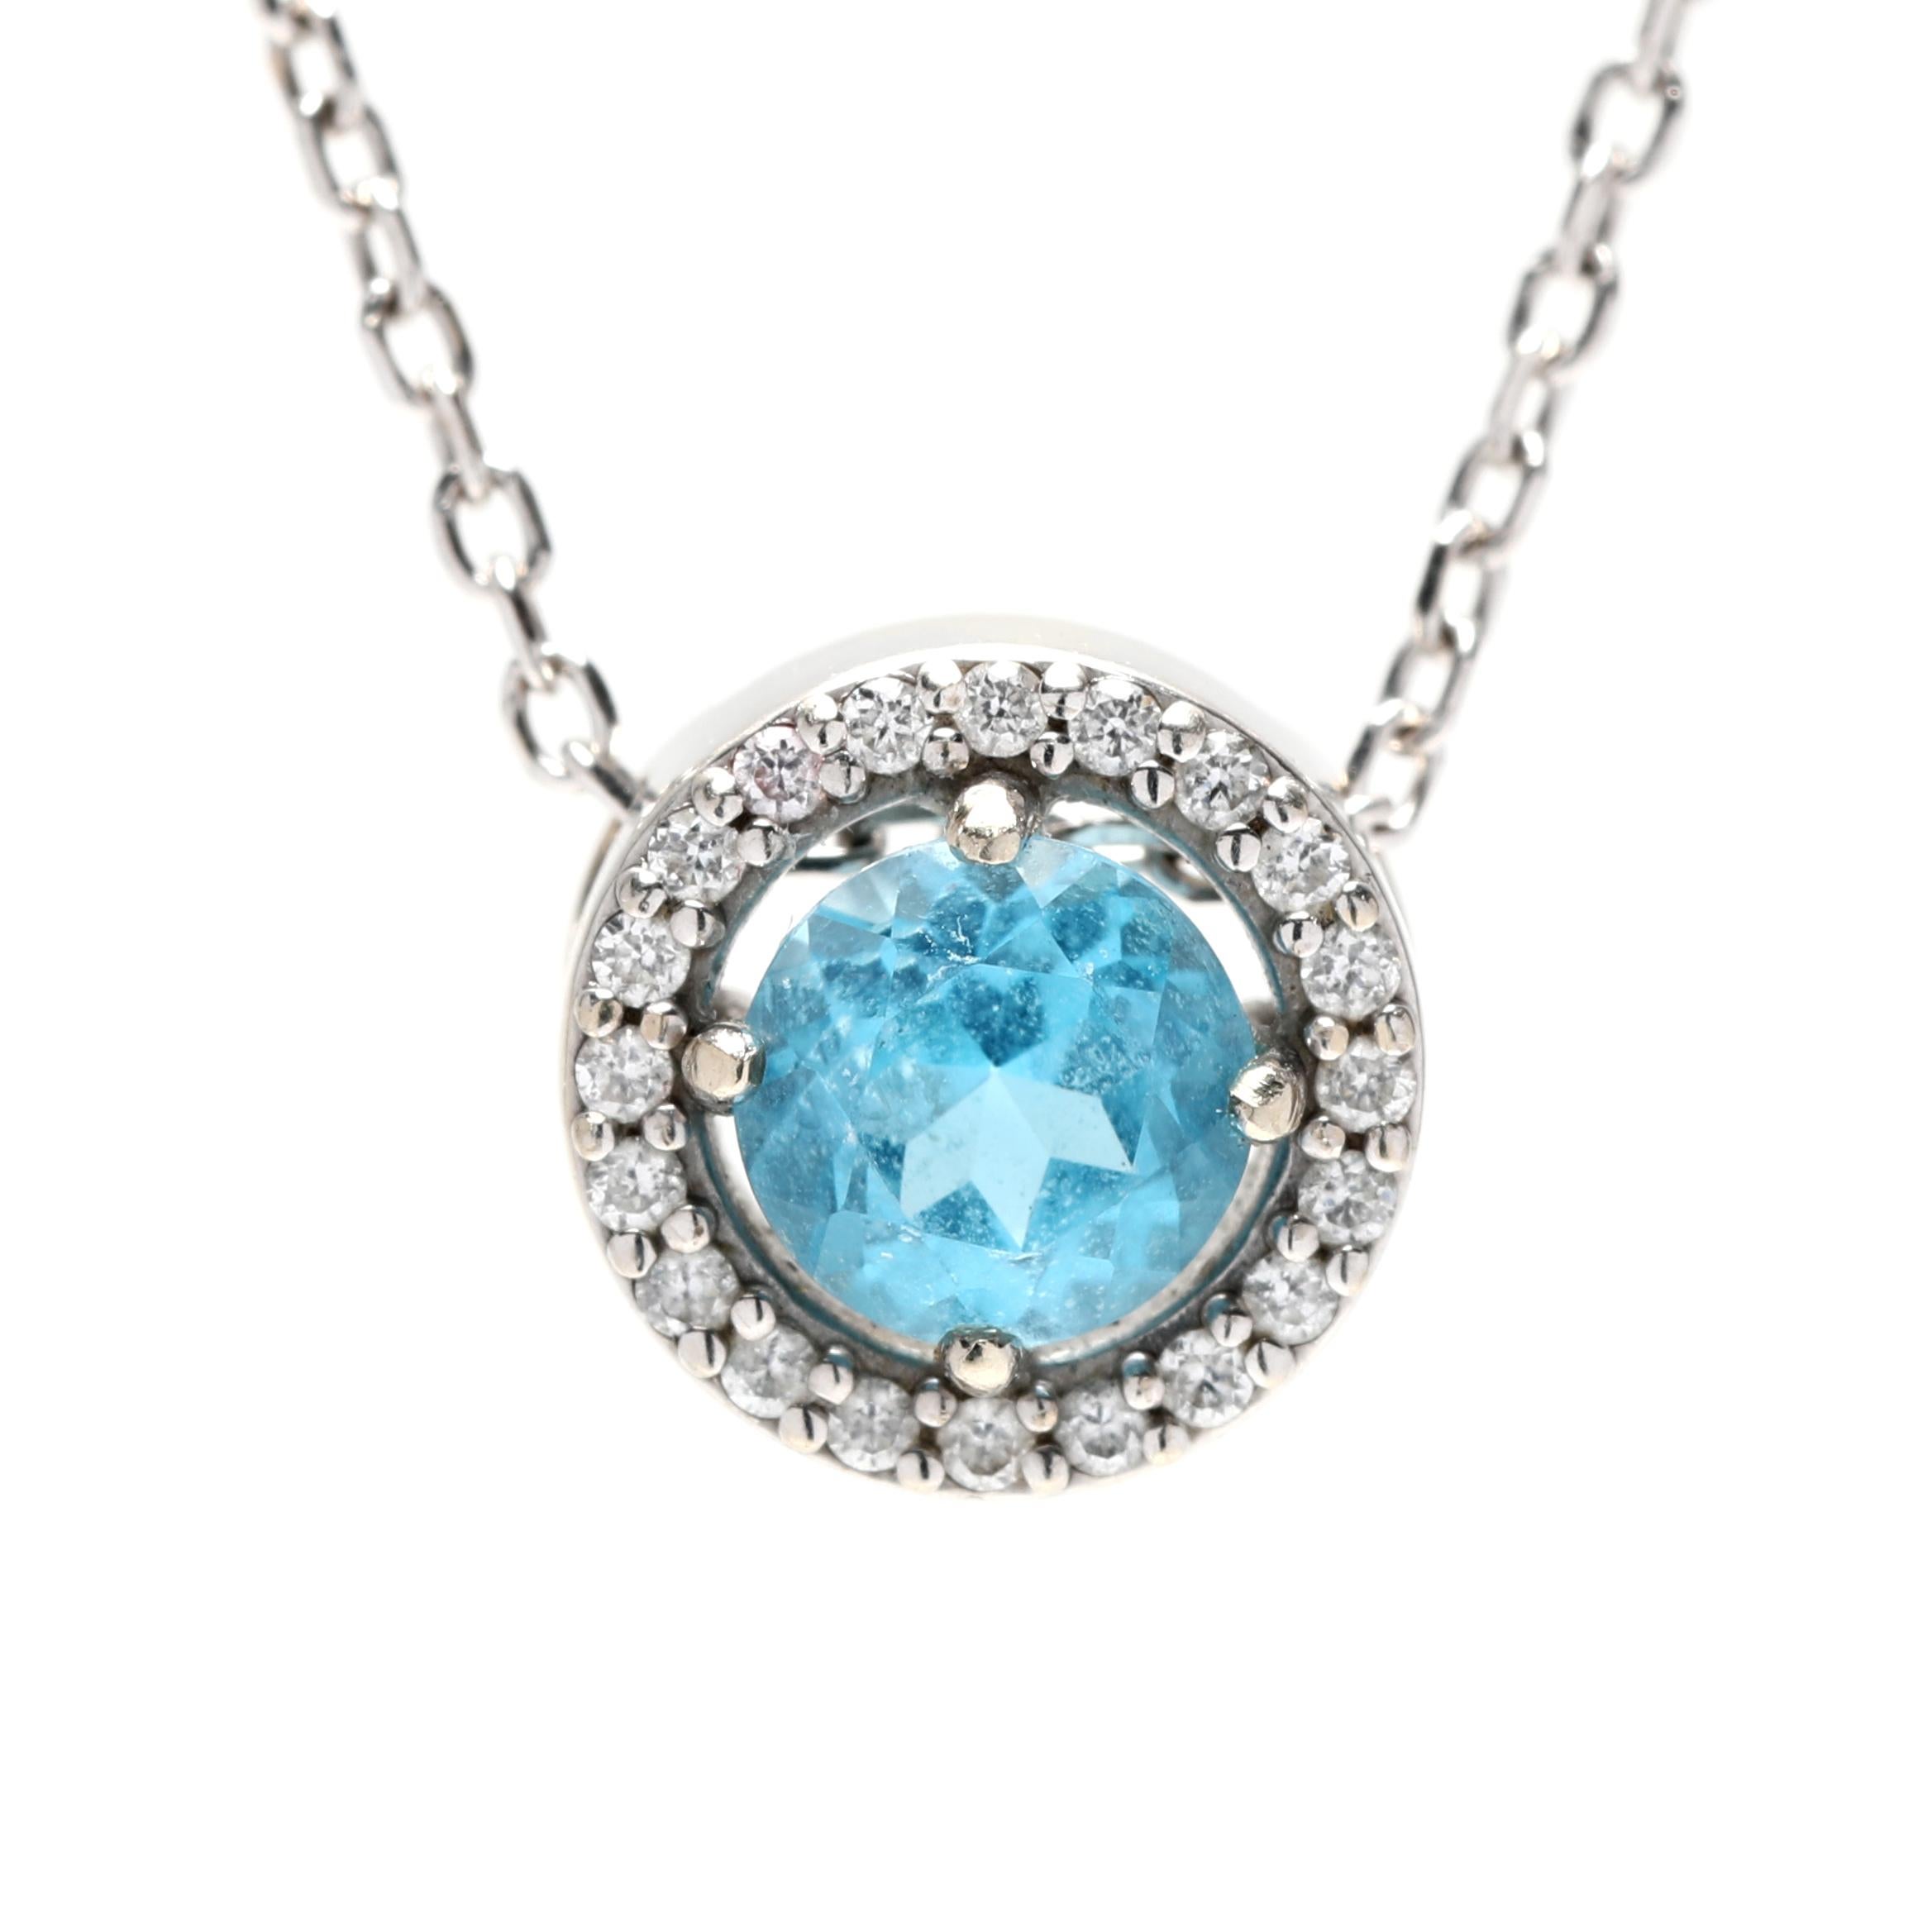 Ce collier pendentif exquis présente une superbe topaze bleue, entourée d'un halo de diamants scintillants. Réalisé en or blanc 14 carats, ce design élégant est parfait pour toute occasion et constitue un magnifique collier de pierres de naissance